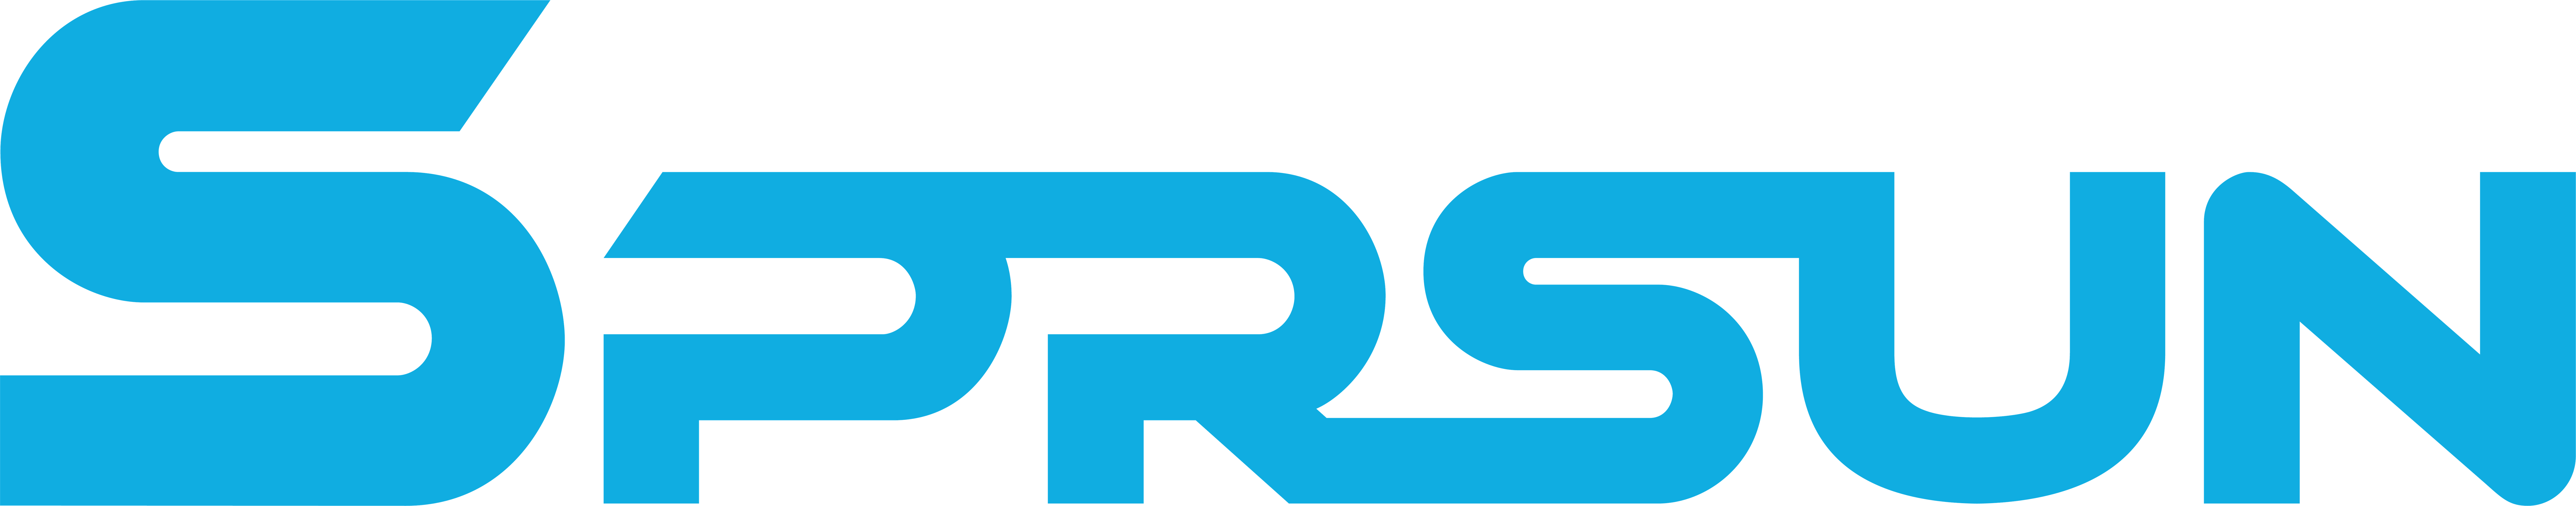 SPRSUN-Logo